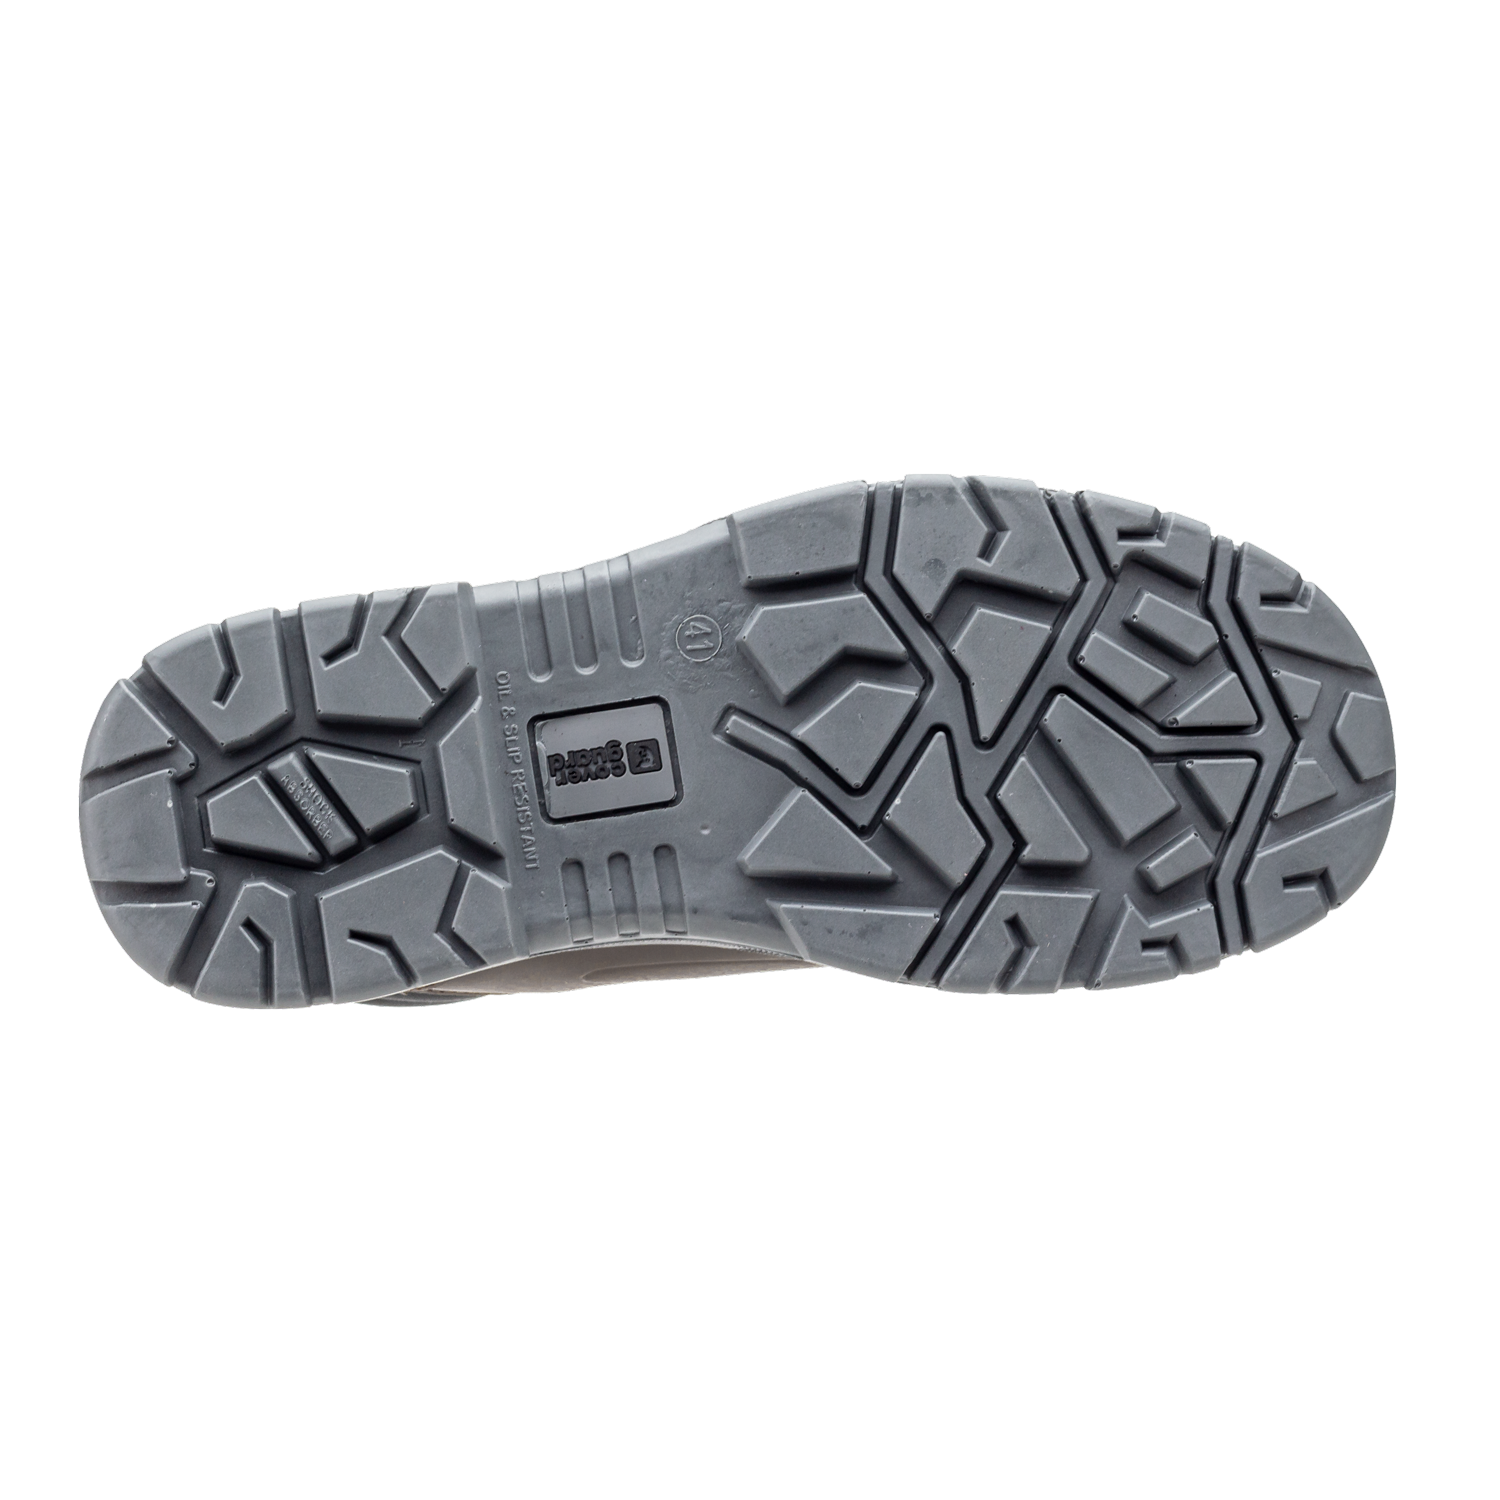 Chaussures de sécurité S3 FLINT Haute Croute de cuir Marron - COVERGUARD - Taille 38 1